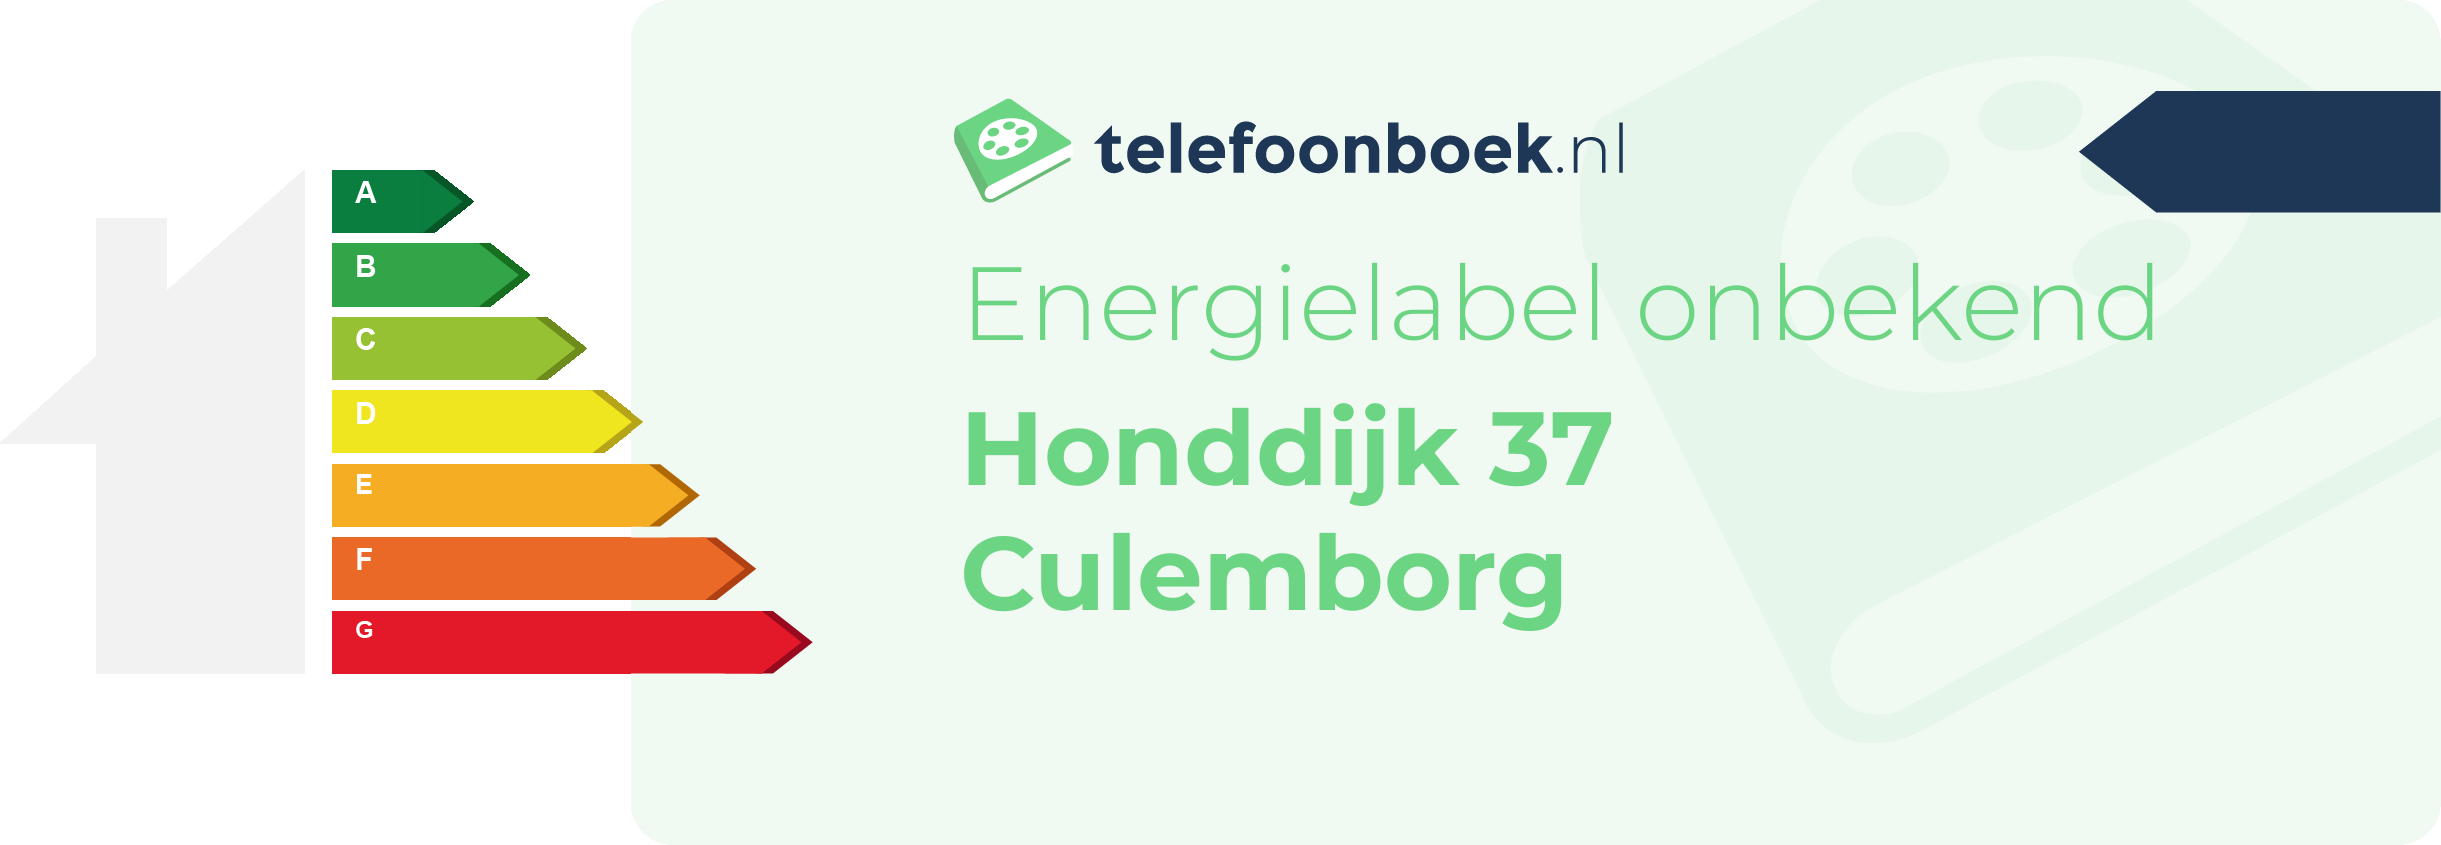 Energielabel Honddijk 37 Culemborg